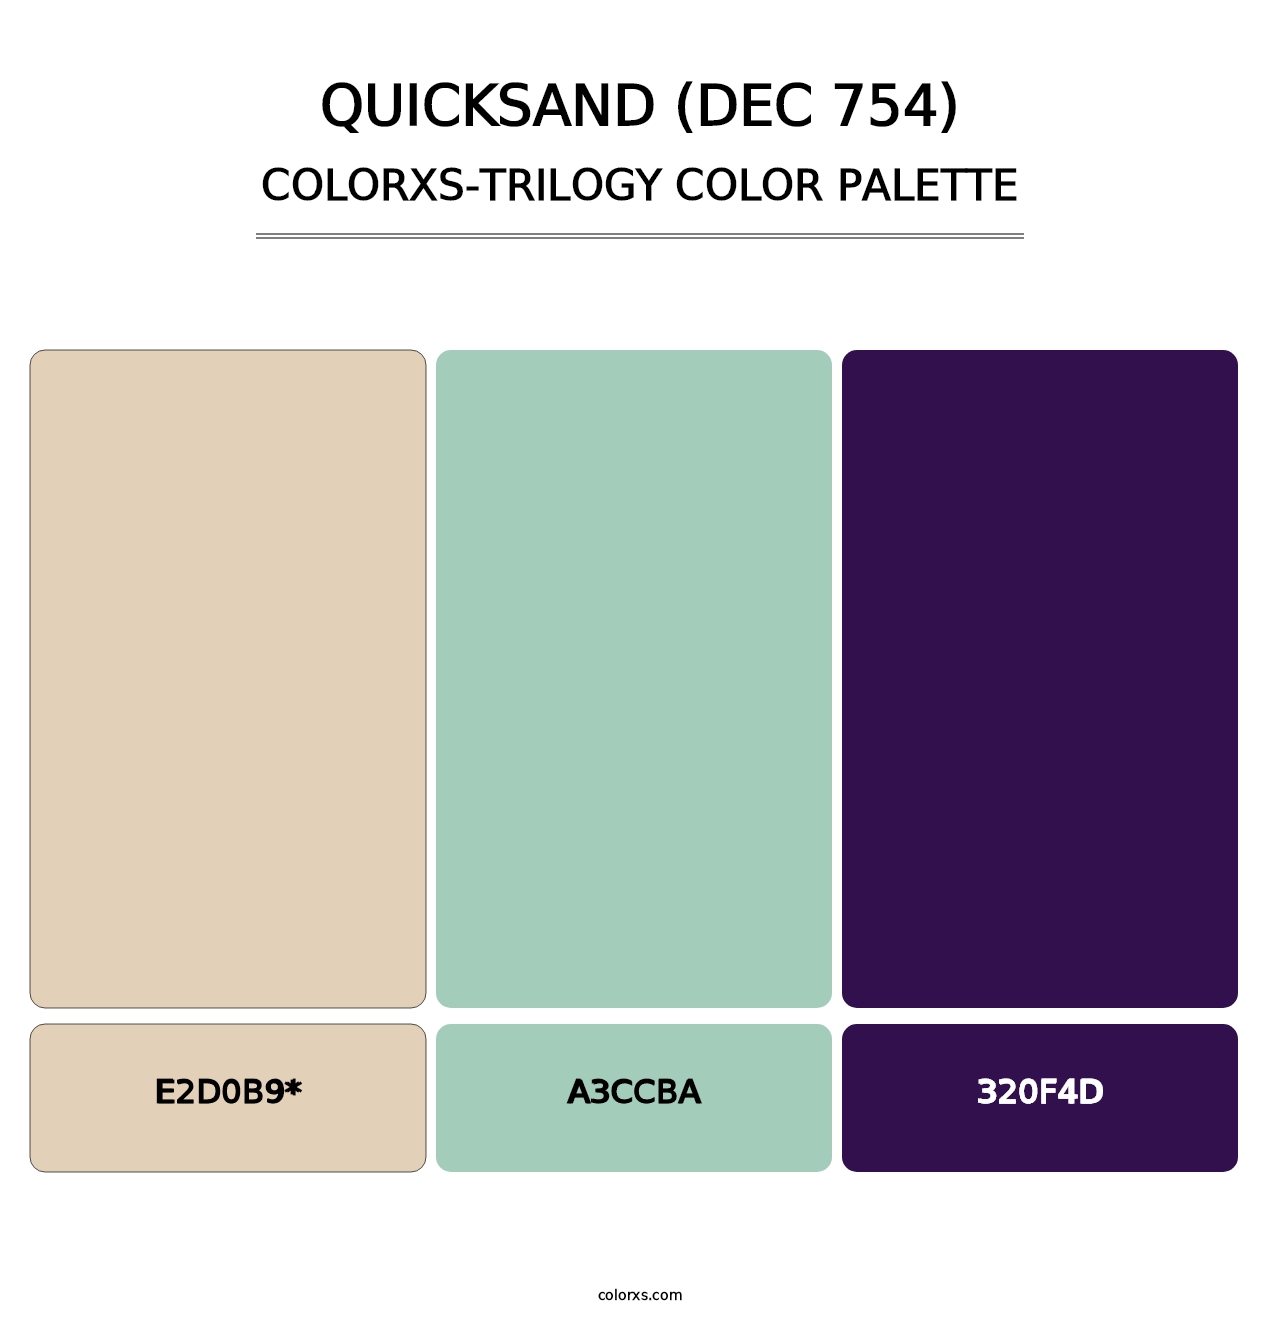 Quicksand (DEC 754) - Colorxs Trilogy Palette